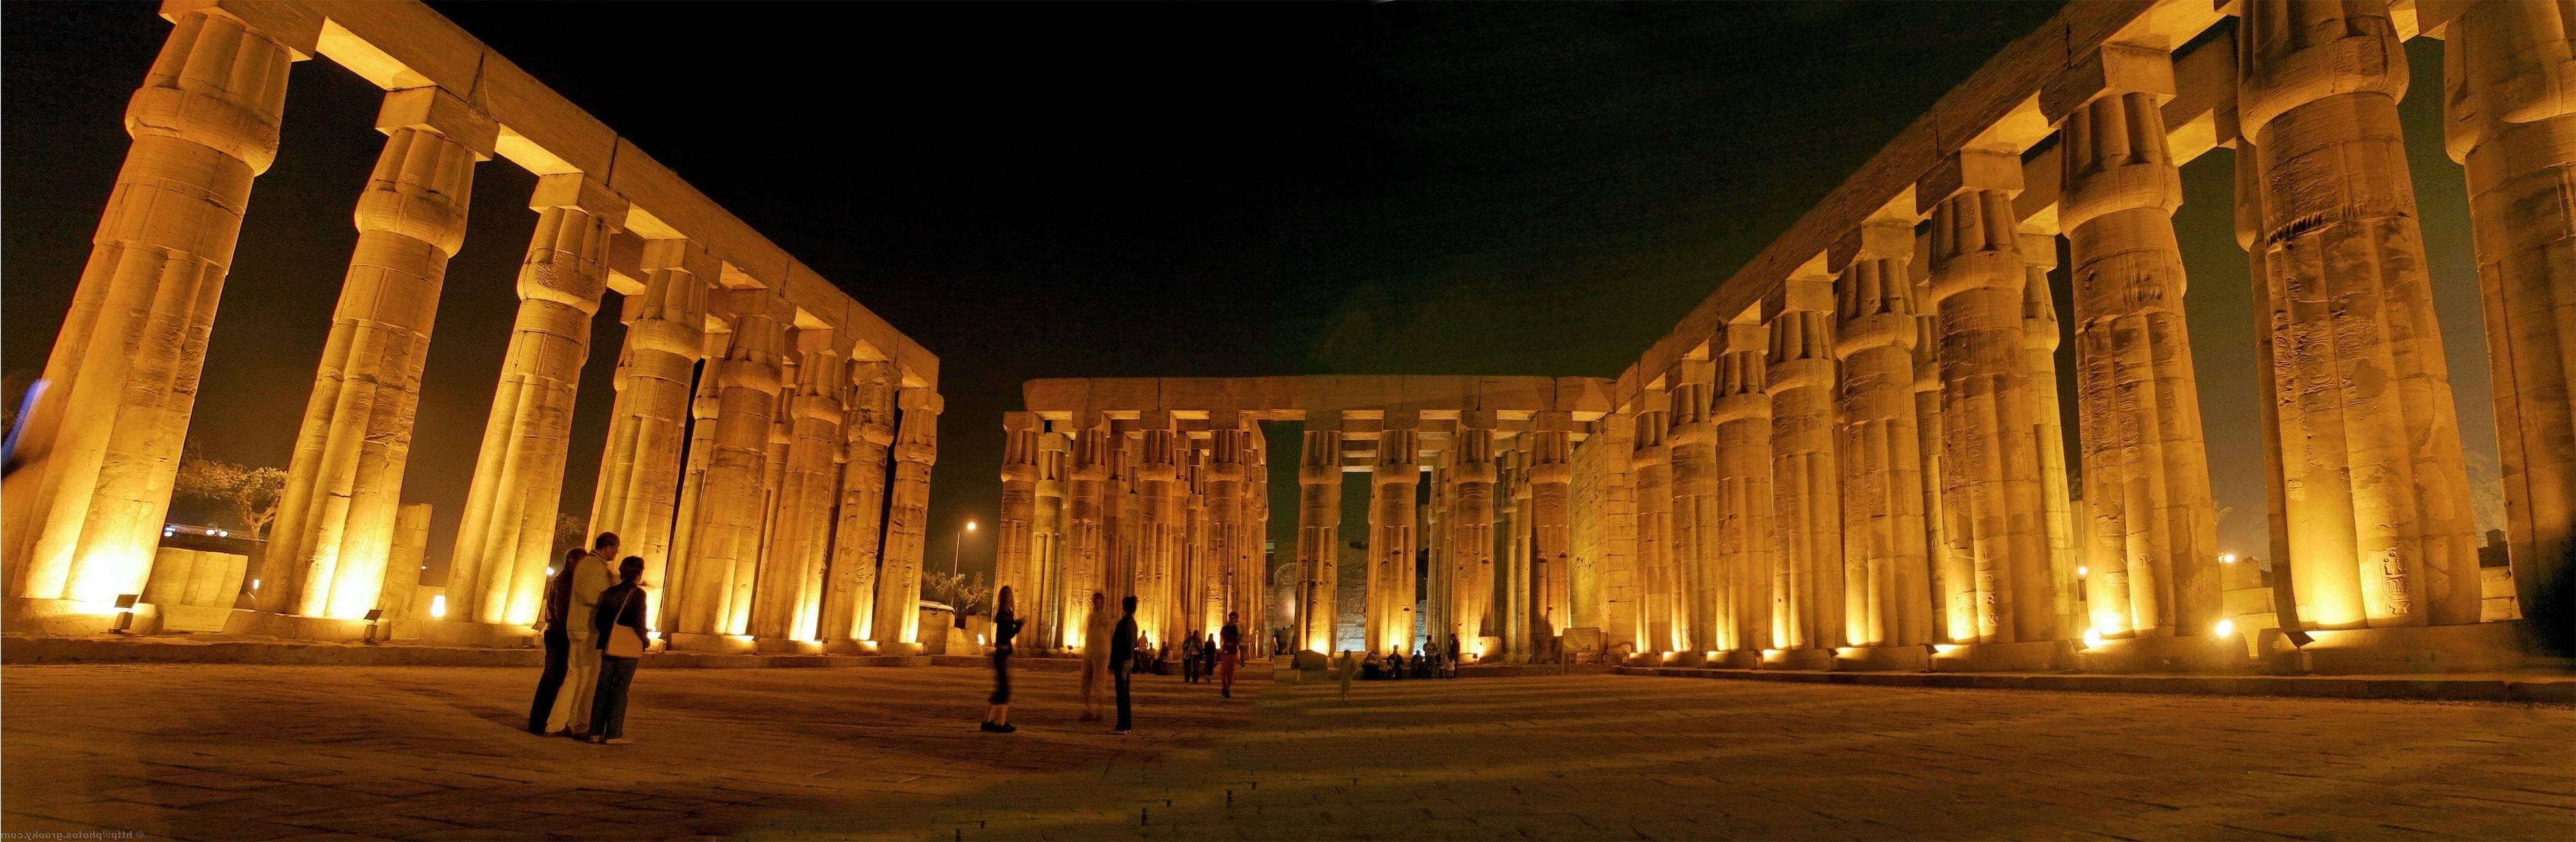 Thành phố Luxor